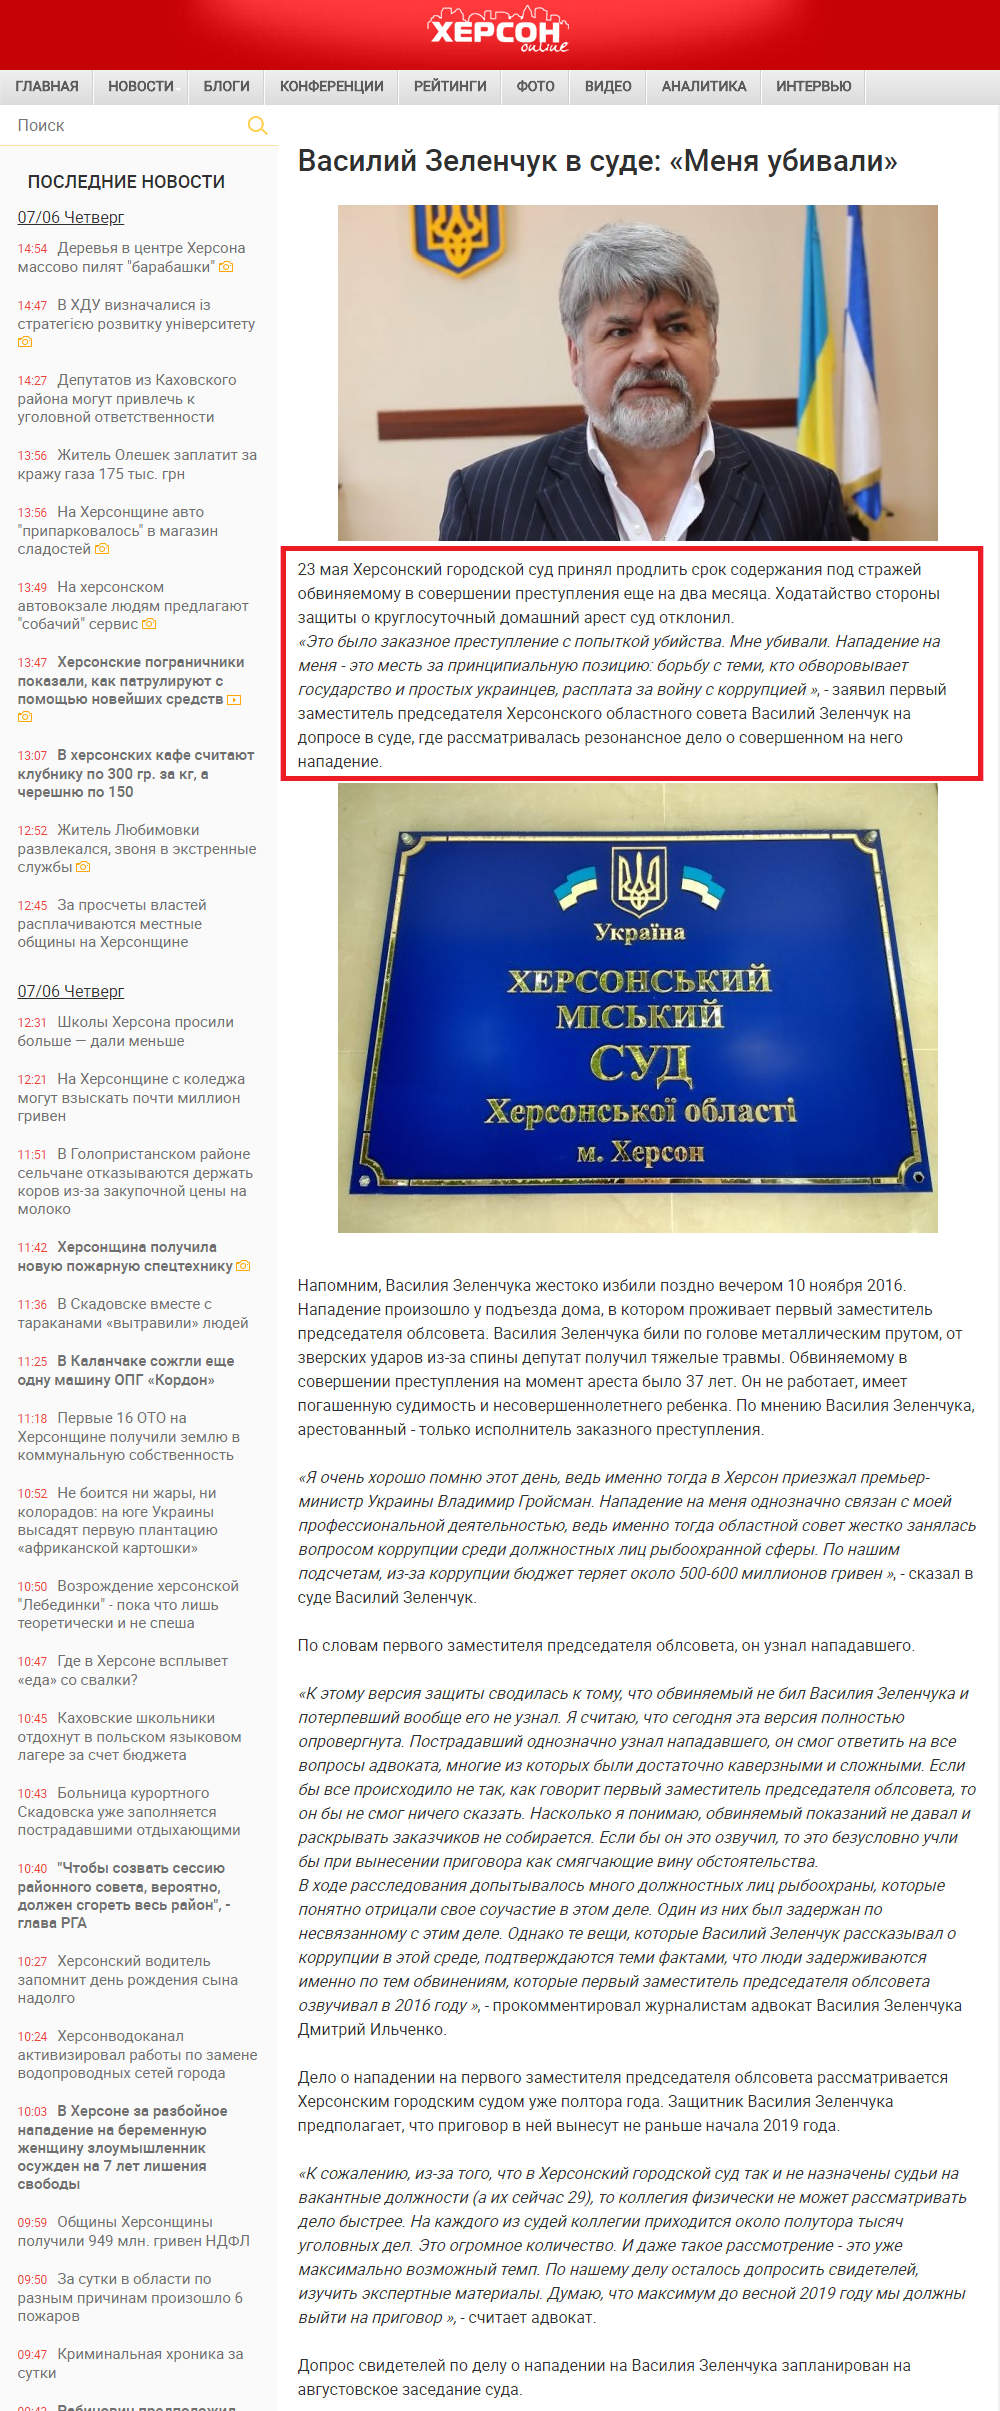 http://khersonline.net/novosti/obschestvo/110189-vasiliy-zelenchuk-v-sude-menya-ubivali.html